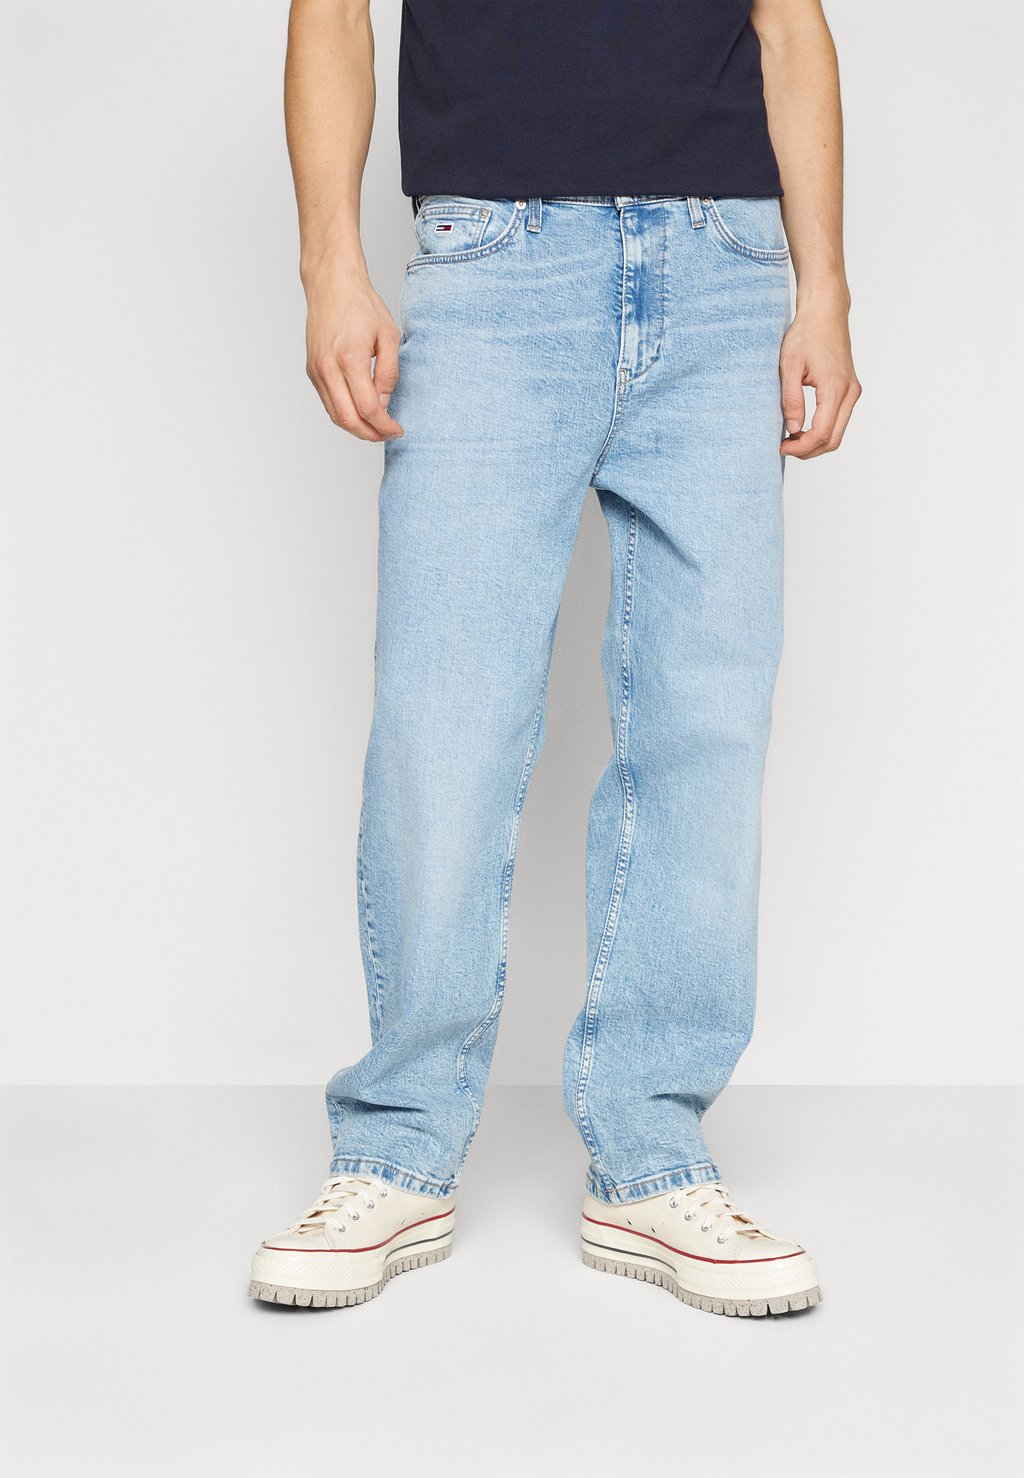 цена Джинсы свободного кроя SKATER RELAXED Tommy Jeans, цвет denim light